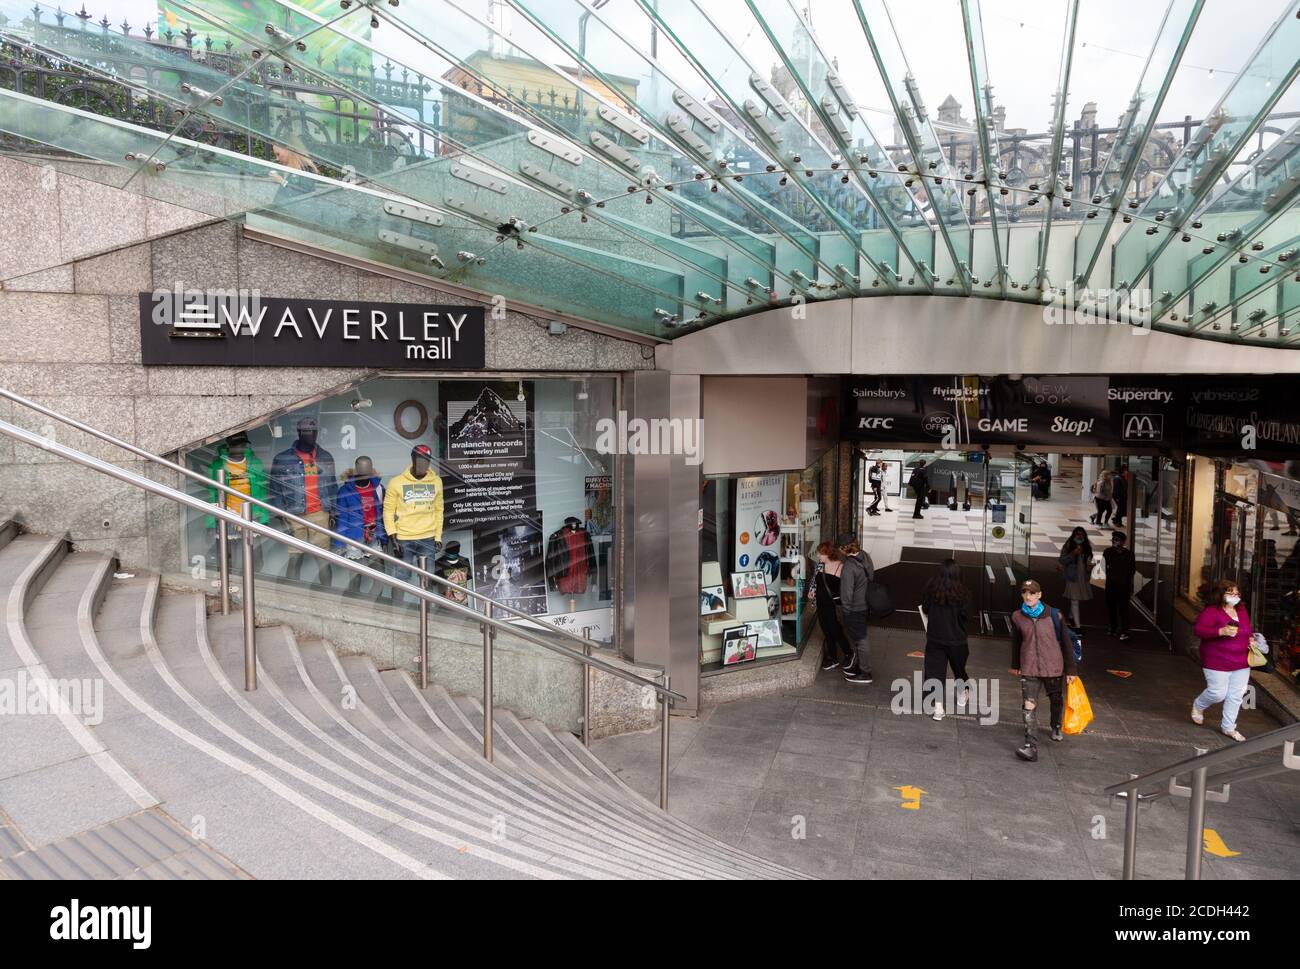 Waverley Mall Edinburgh - personas en la entrada del centro comercial Waverley Mall, Edinburgh Scotland UK Foto de stock